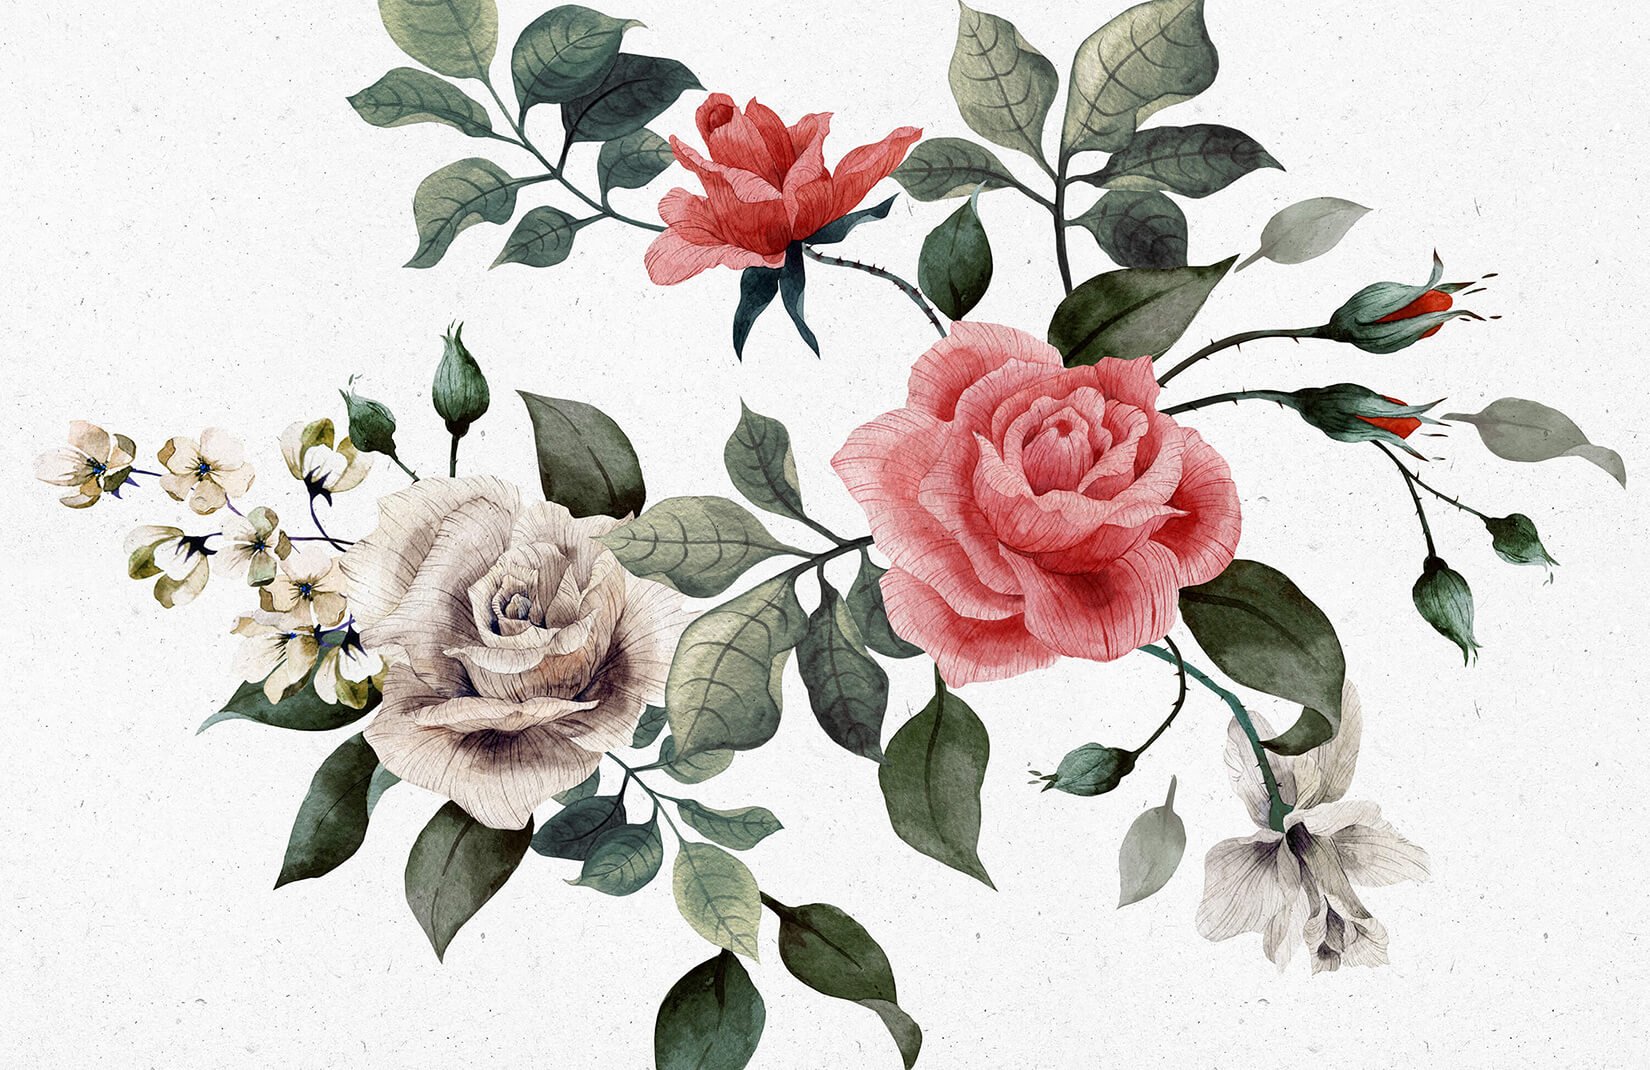 빨간색과 흰색 장미 벽지,꽃,꽃 피는 식물,식물,정원 장미,장미